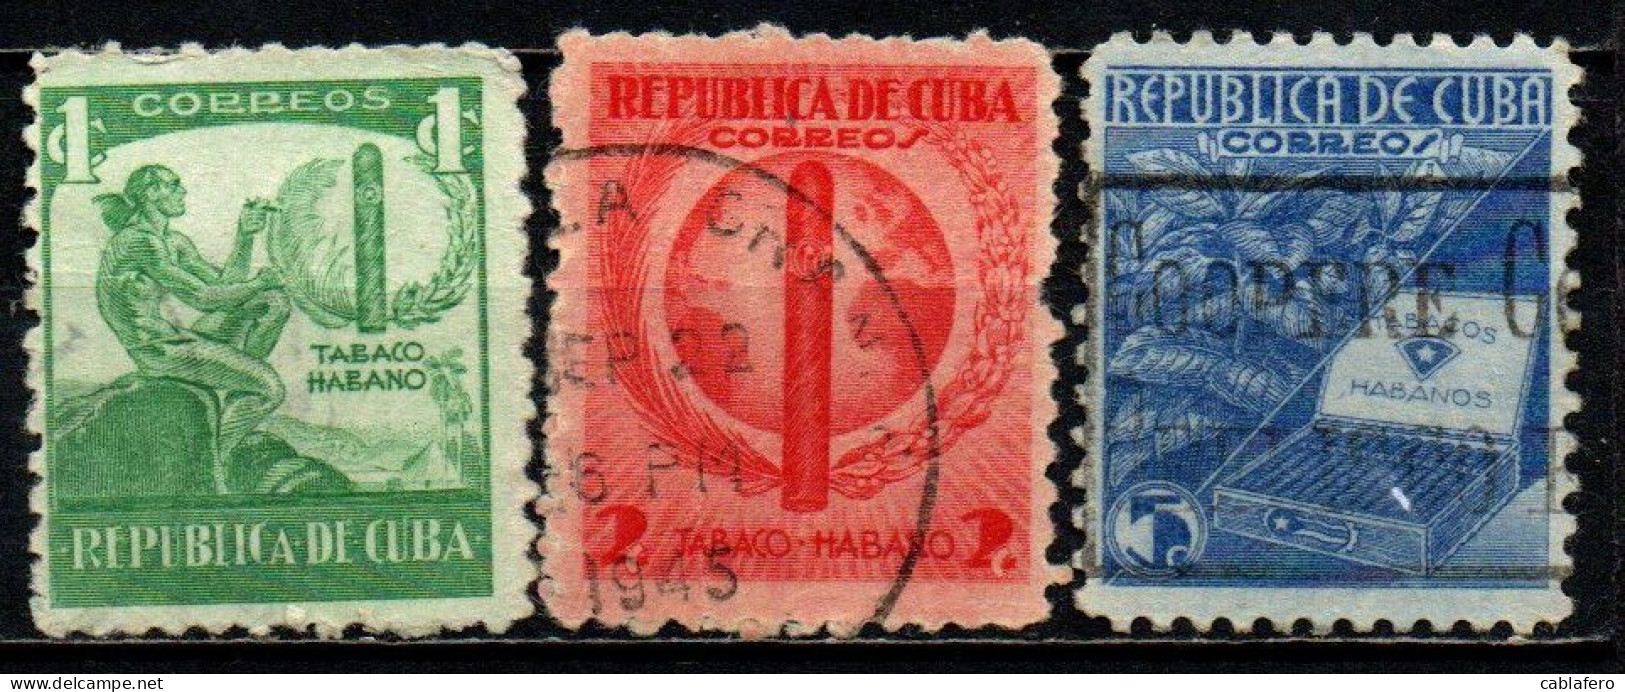 CUBA - 1939 - INDIANO D'AMERICA, SIGARO CUBANO, PIANTA DI TABACCO E SIGARI CUBANI - USATI - Used Stamps